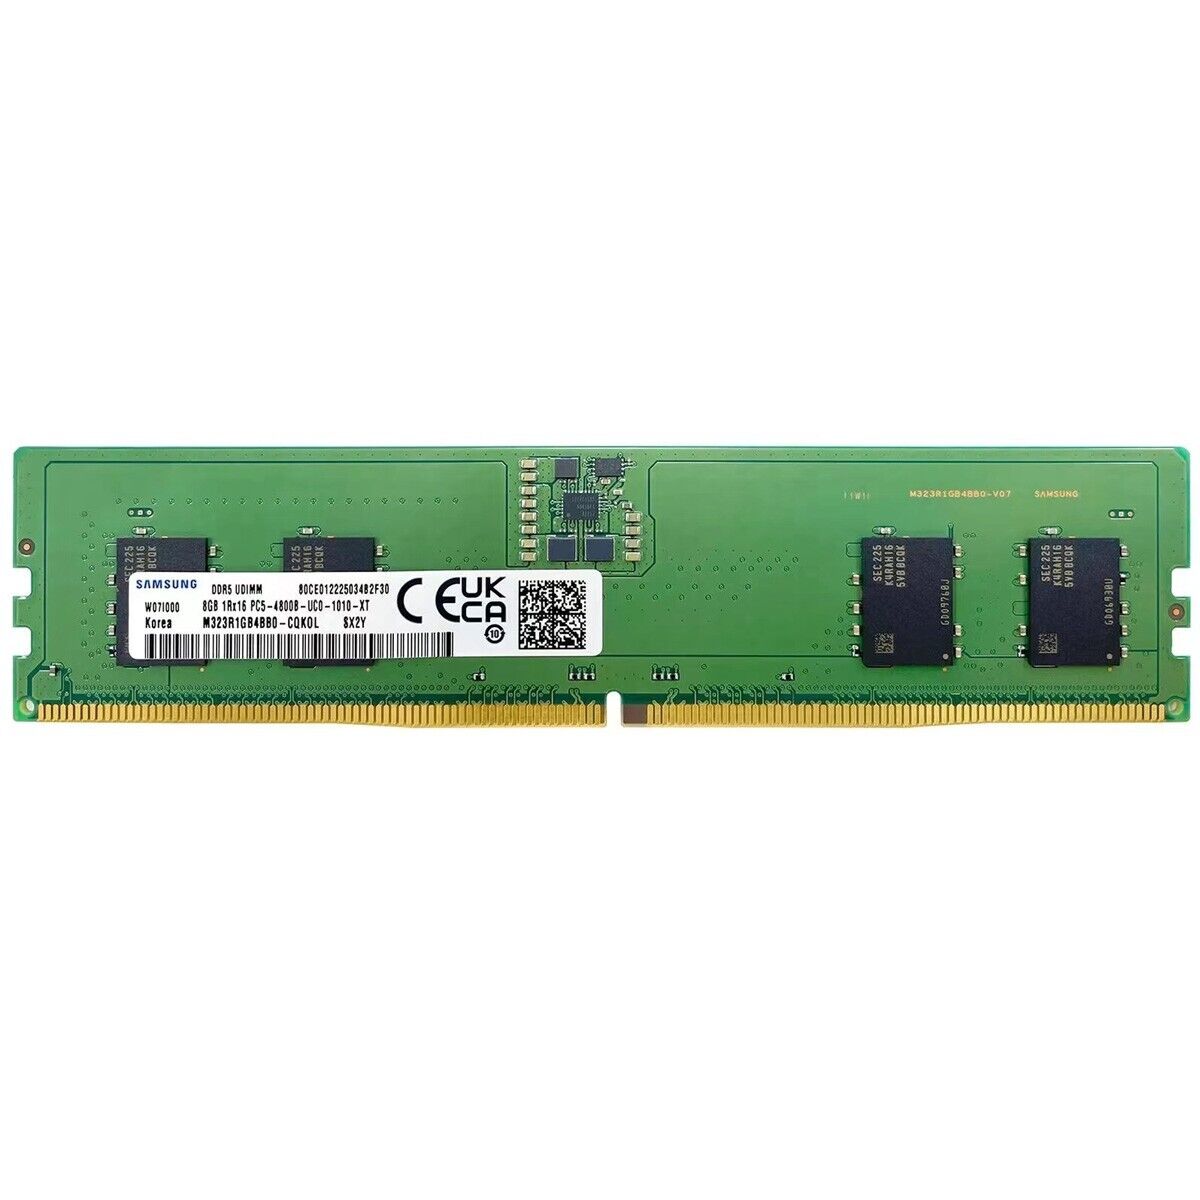 Samsung  8GB DDR5 DDR5 4800MHz PC5-38400 1RX16 UDIMM Memory Ram M323R1GB4BB0-CQK